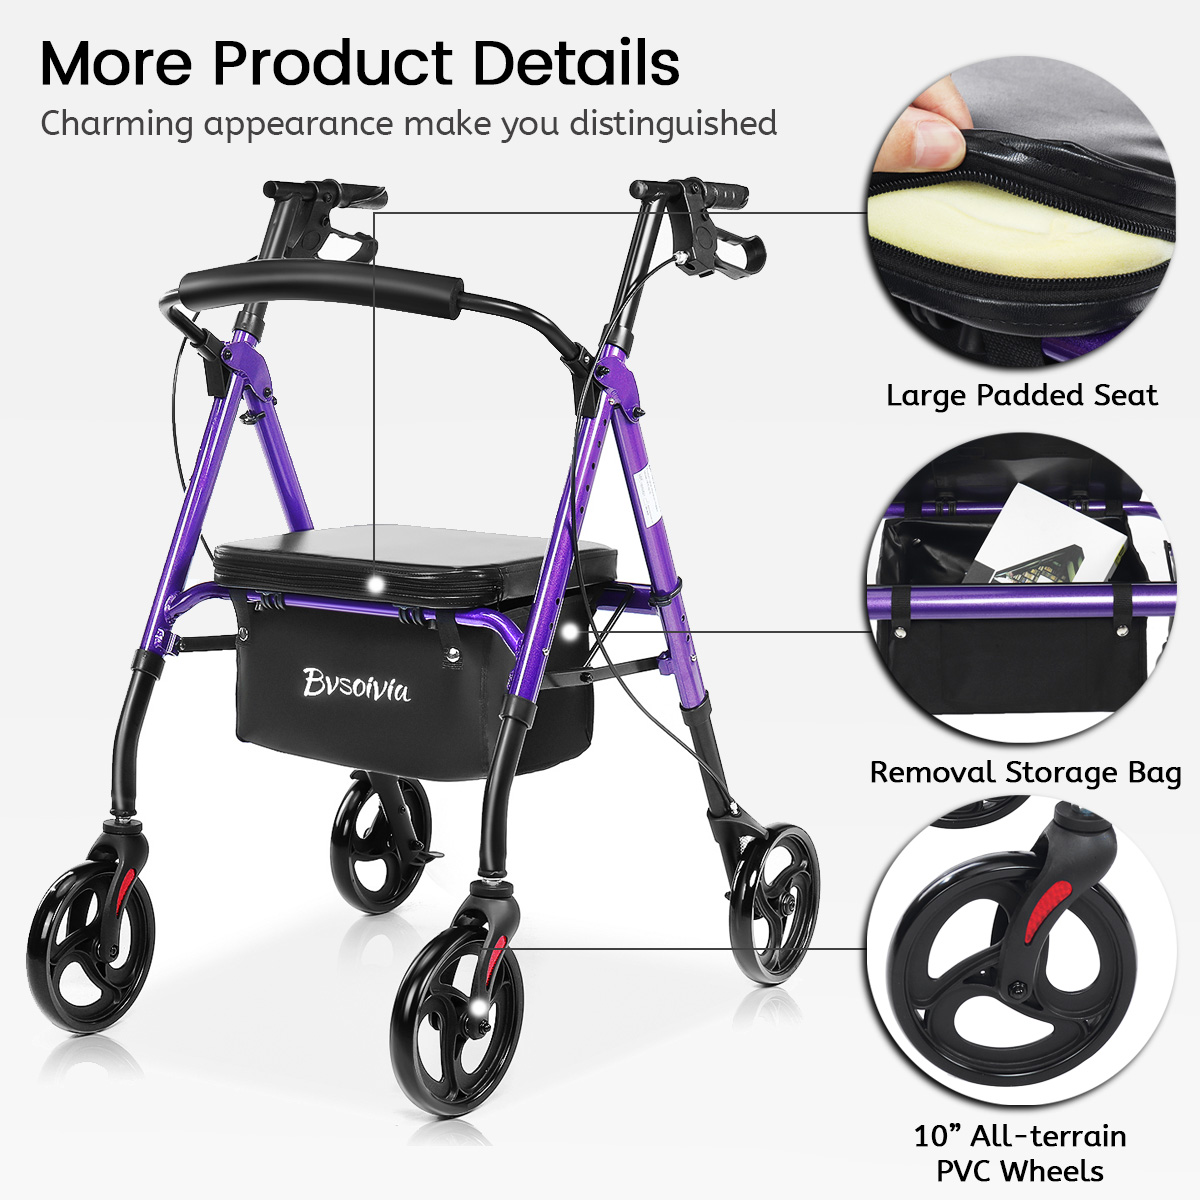 4-Wheel-Seat-Rolling-Walker-Chair-Rollator-Foldable-Adjustable-Elderly-Aid-Basket-Backrest-1940430-16